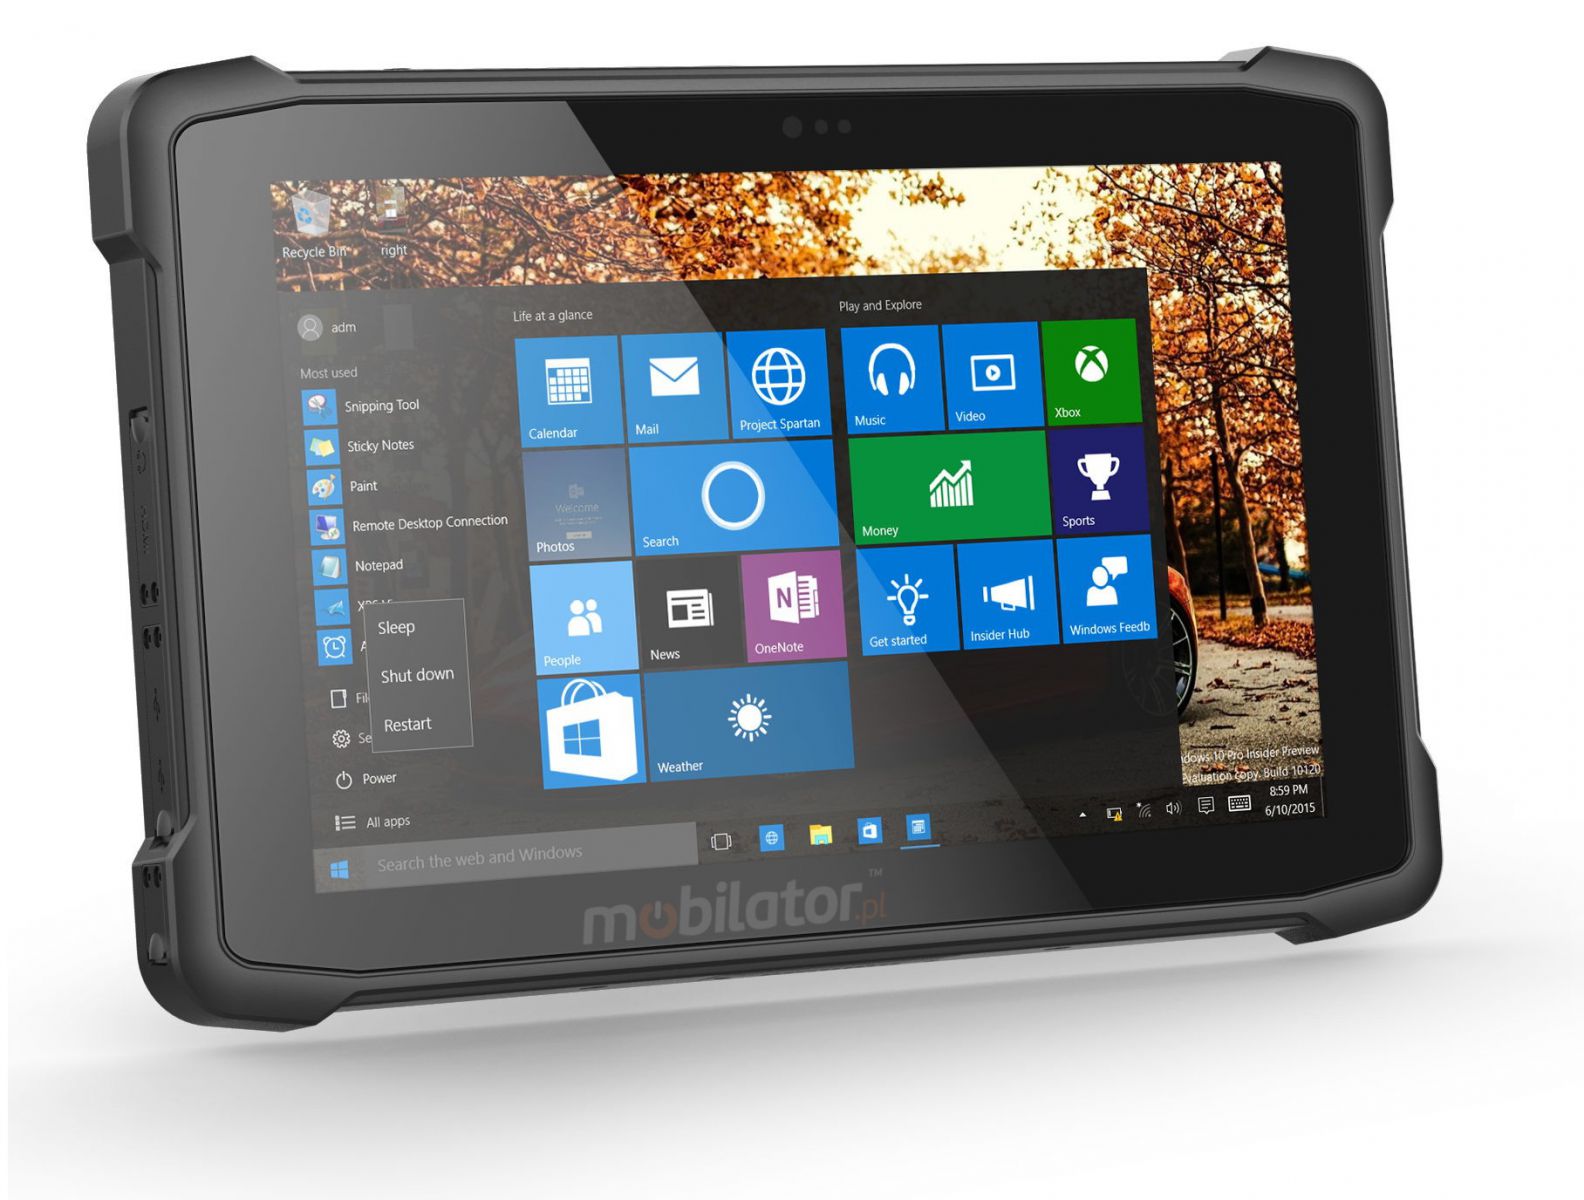 Emdoor I11H v.5 - Wytrzymay, dziesiciocalowy tablet z czytnikiem kodw 1D MOTO, Bluetooth 4.2, 4GB RAM pamici, dyskiem 64GB, NFC, 4G i Windows 10 PRO